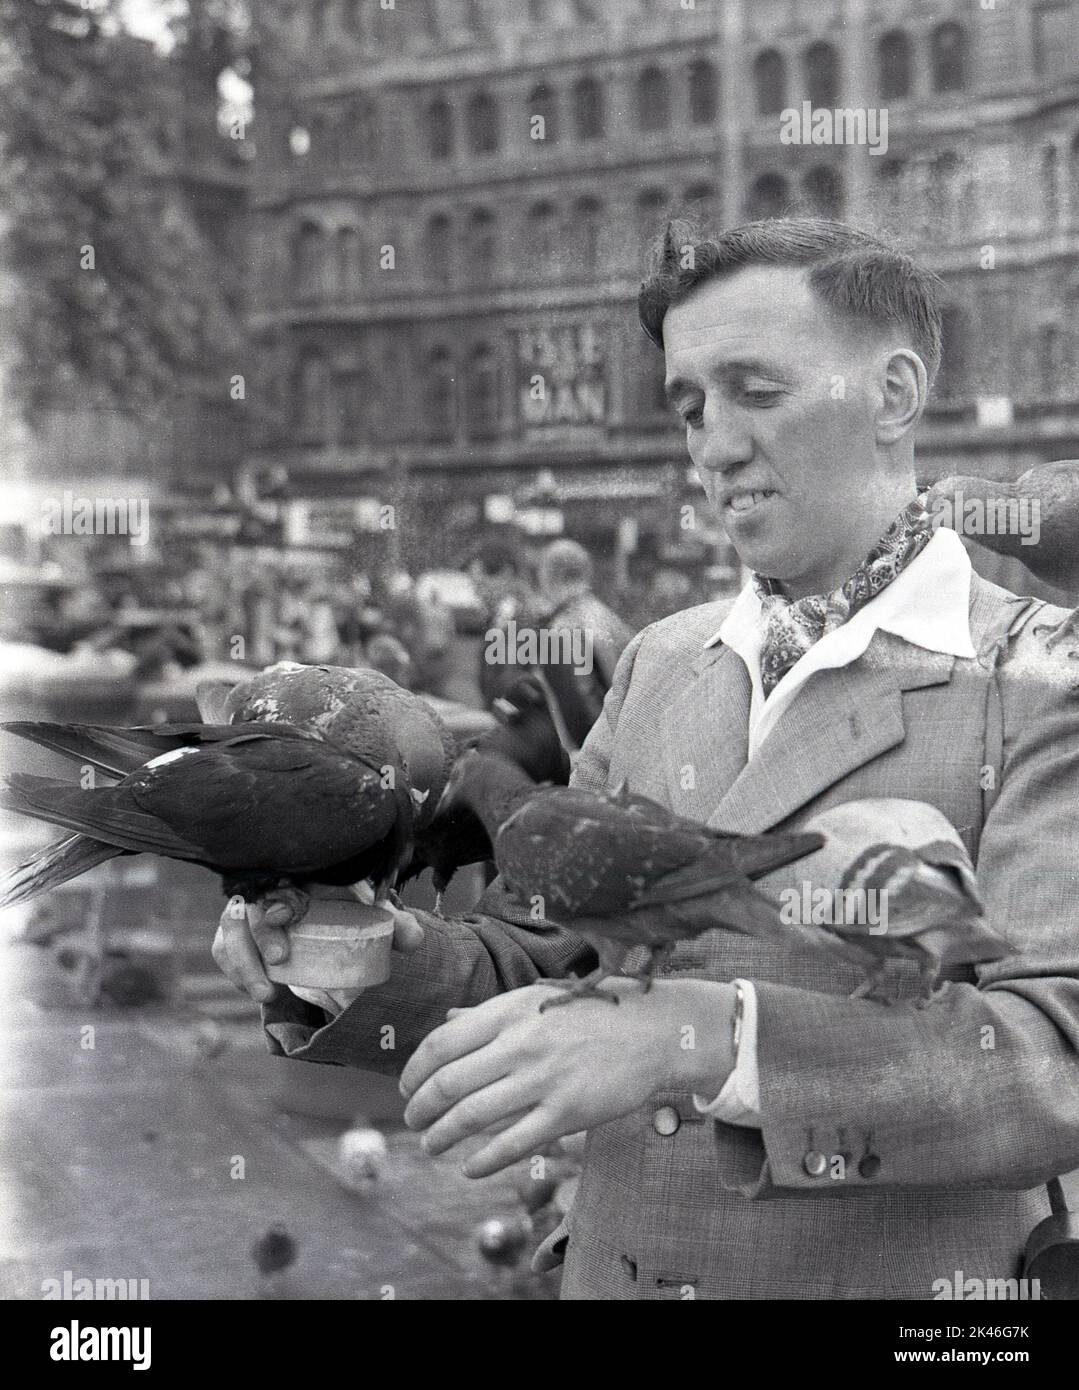 1958, historisch, Tauben, die auf der Hand und den Armen eines Mannes sitzen, einige füttern aus einer Dose Erbsen am Trafalgar Square, Westminster, London, England, Großbritannien. In dieser Zeit und später wurde die Fütterung der Wildvögel auf dem Platz erlaubt und Händler verkauften Dosen von Lebensmitteln, aber um die Wende des Jahrzehnts, nachdem Millionen Pfund Renovierung in der Gegend stattgefunden hatten, wurden Abschiedsgesetze eingeführt, um die Fütterung zu verbieten. Stockfoto